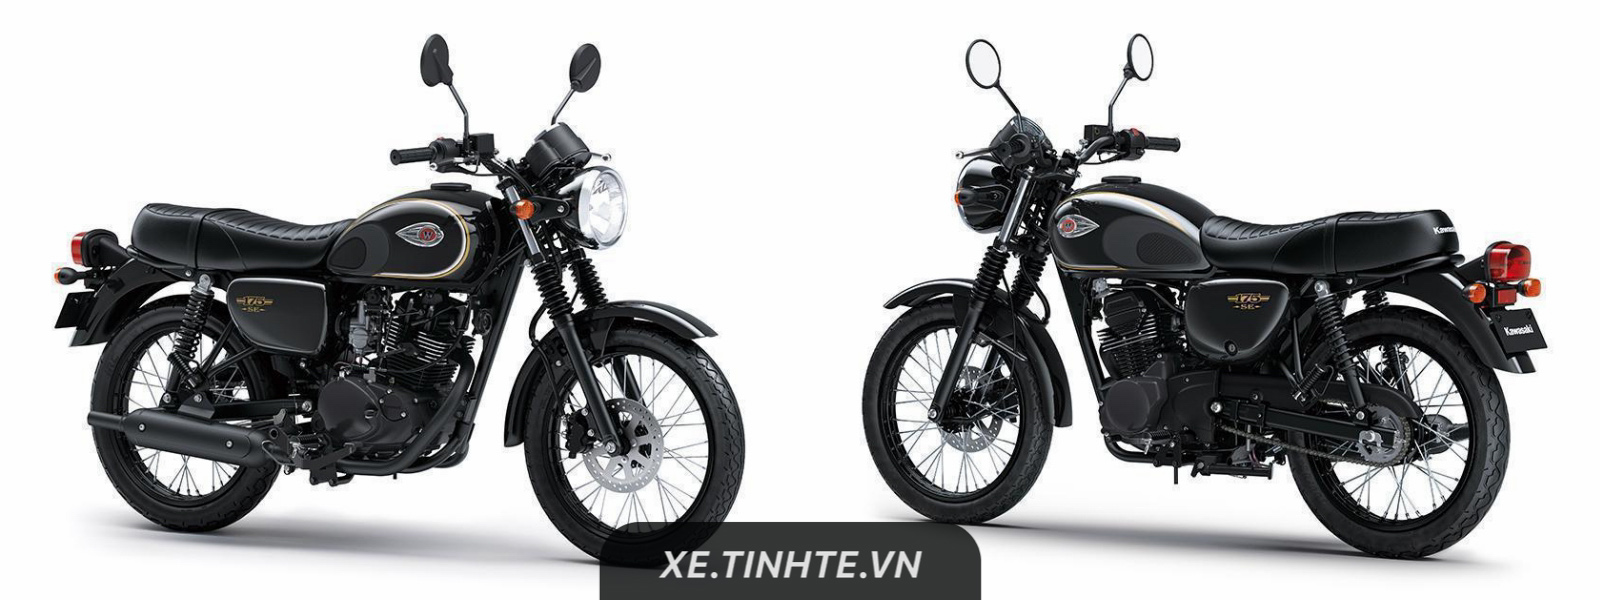 Kawasaki W175 ra mắt tại Indonesia, phong cách hoài cổ, động cơ 175 cc, giá từ 2.200 USD